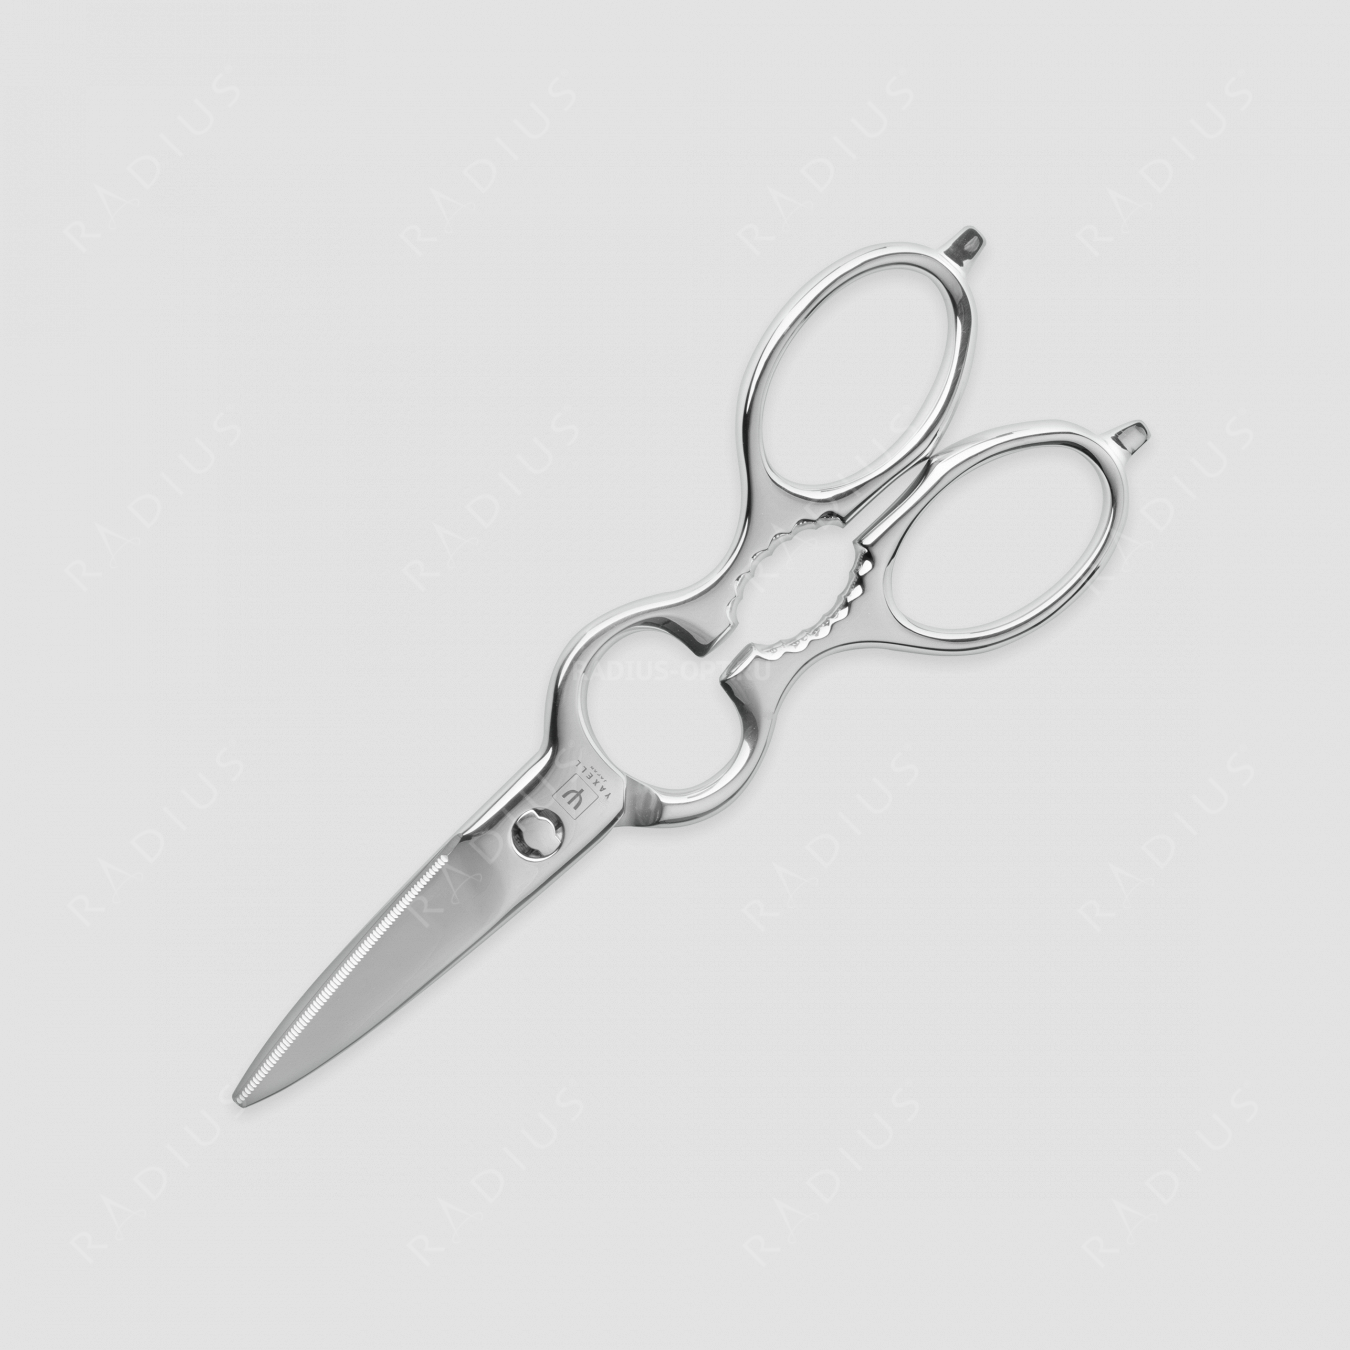 Ножницы кухонные 20 см. разъемные, серия Scissors, YAXELL, Япония